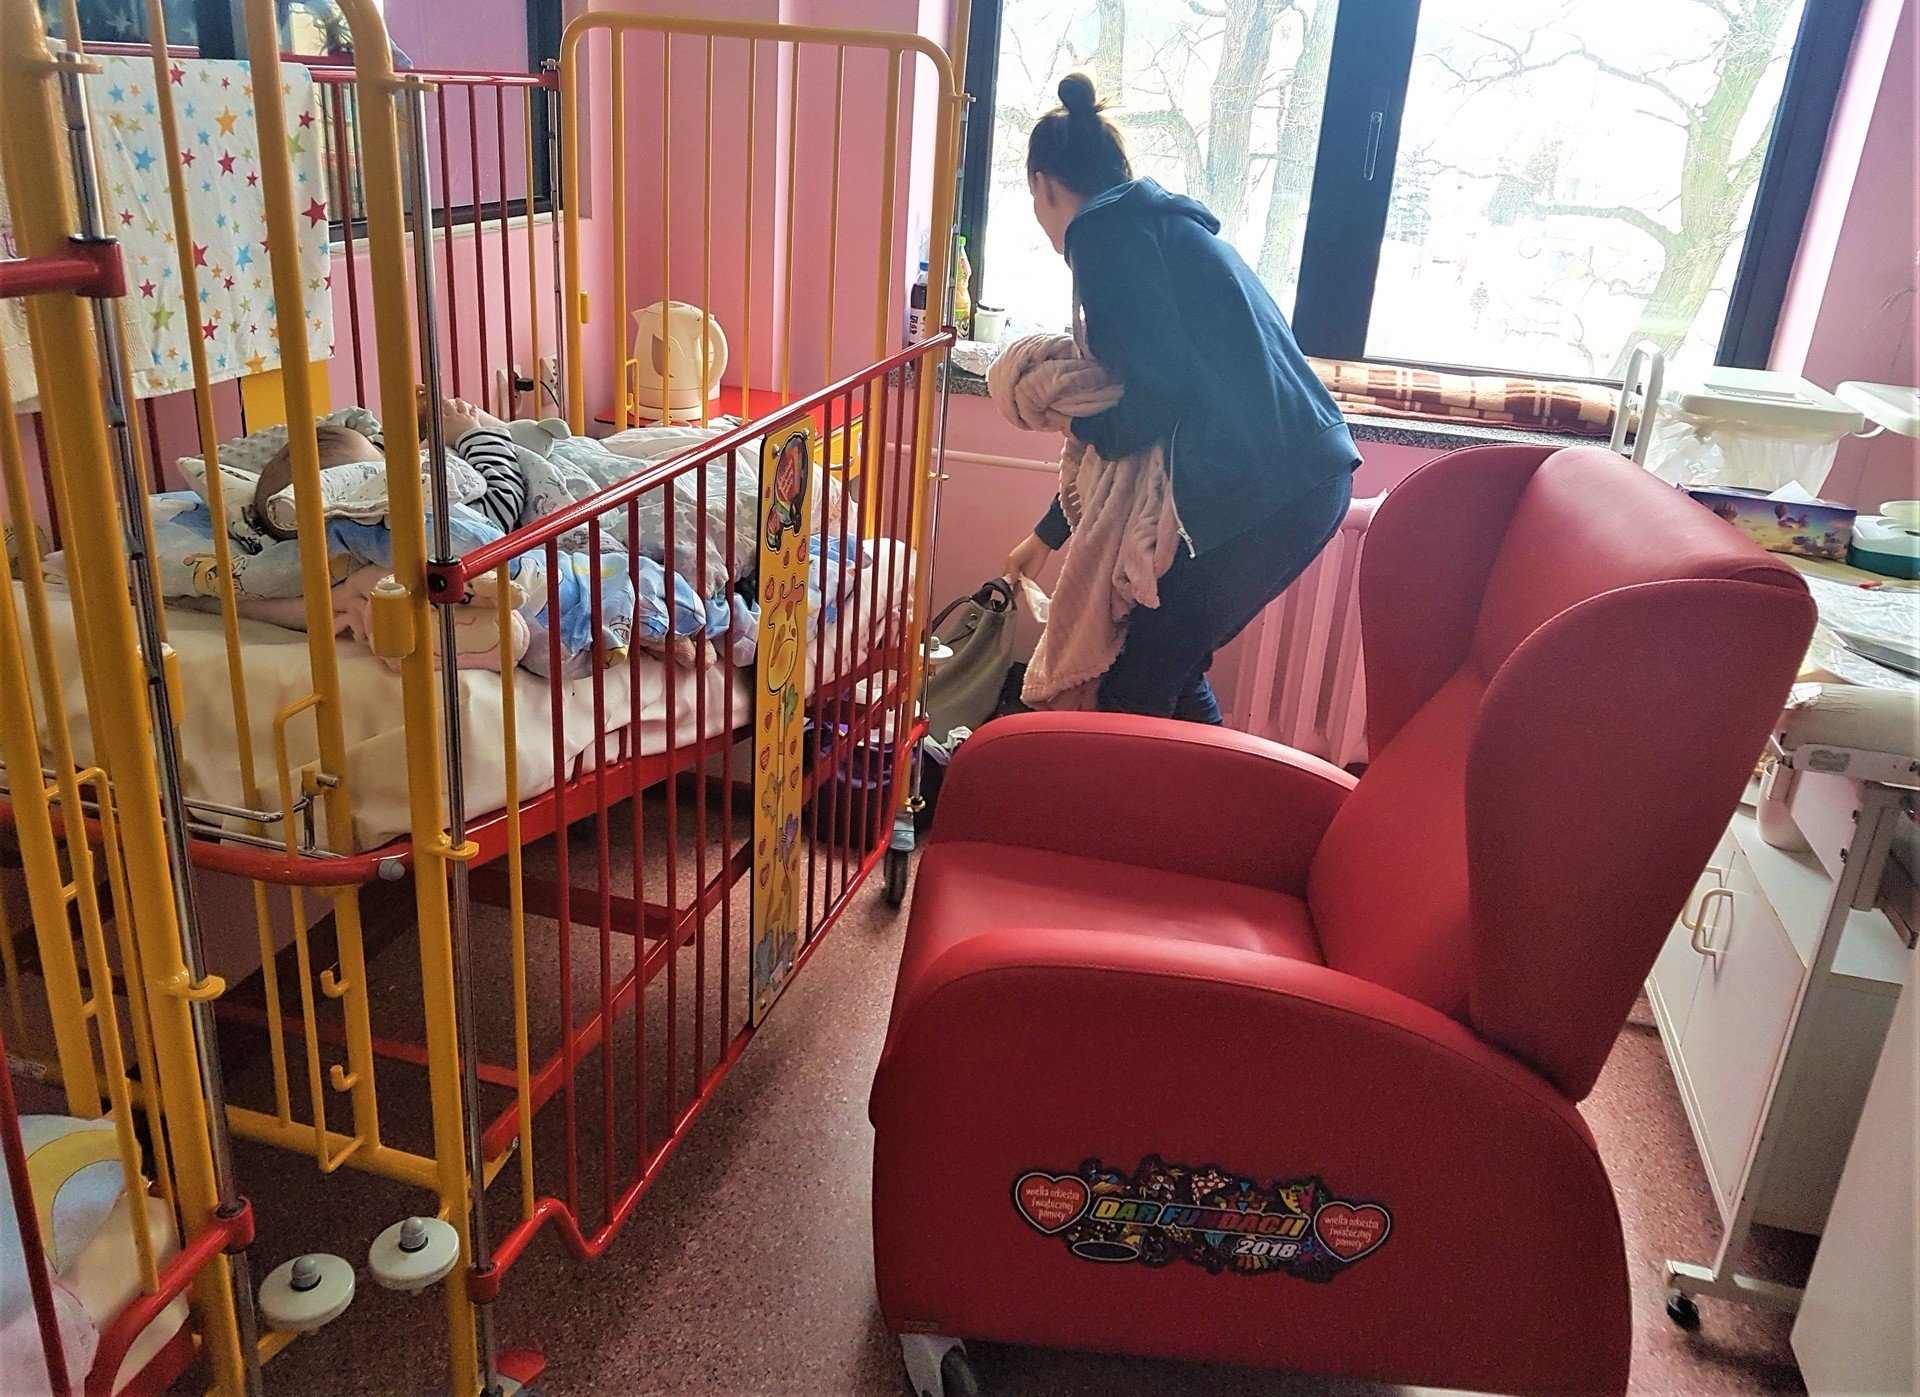 Szpital w Tarnobrzegu dostał fotele od WOŚP. Rodzice mogą spać, a nie  koczować | Echo Dnia Podkarpackie